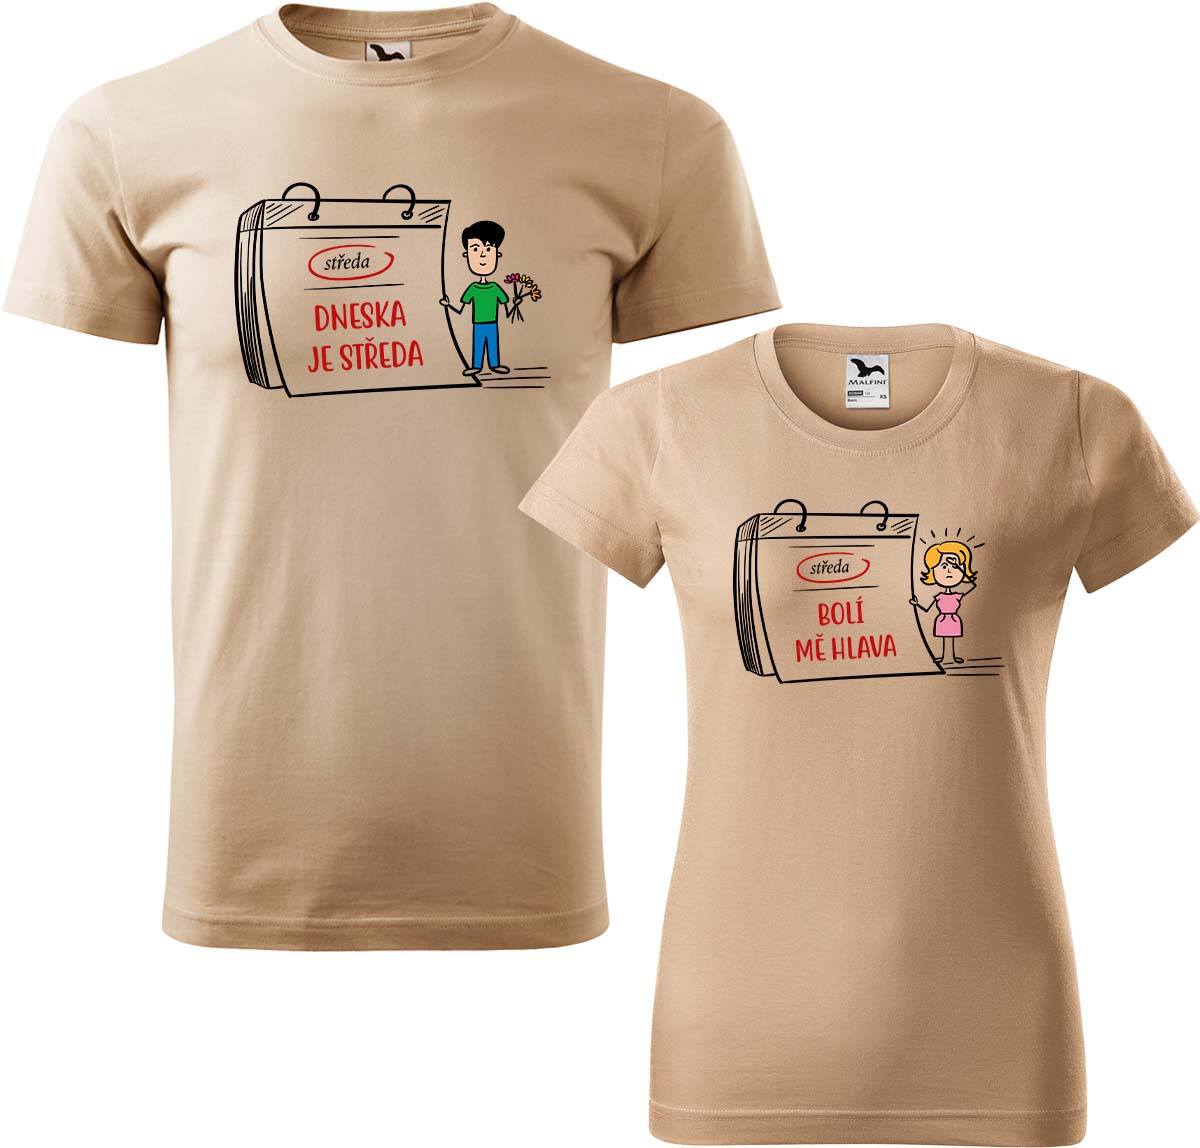 Trička pro páry - Dneska je středa Barva: Písková (08), Velikost dámské tričko: 3XL, Velikost pánské tričko: 4XL